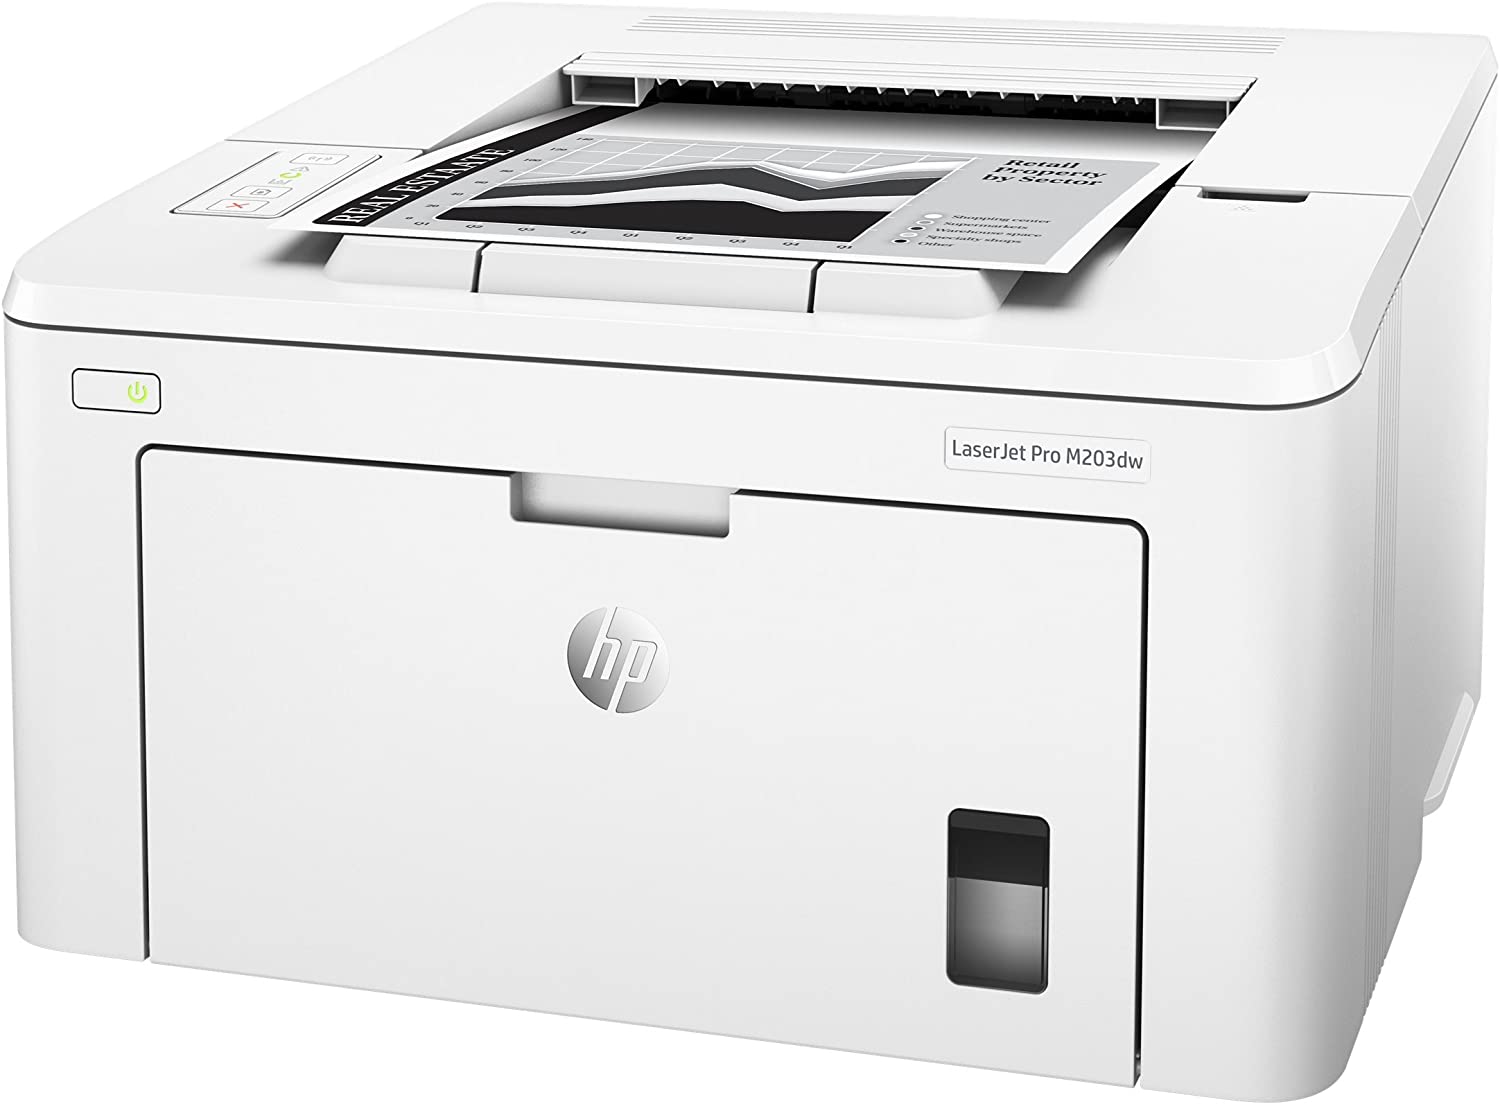 Hp Laserjet Pro M203dw – Printer – B/w – Laser